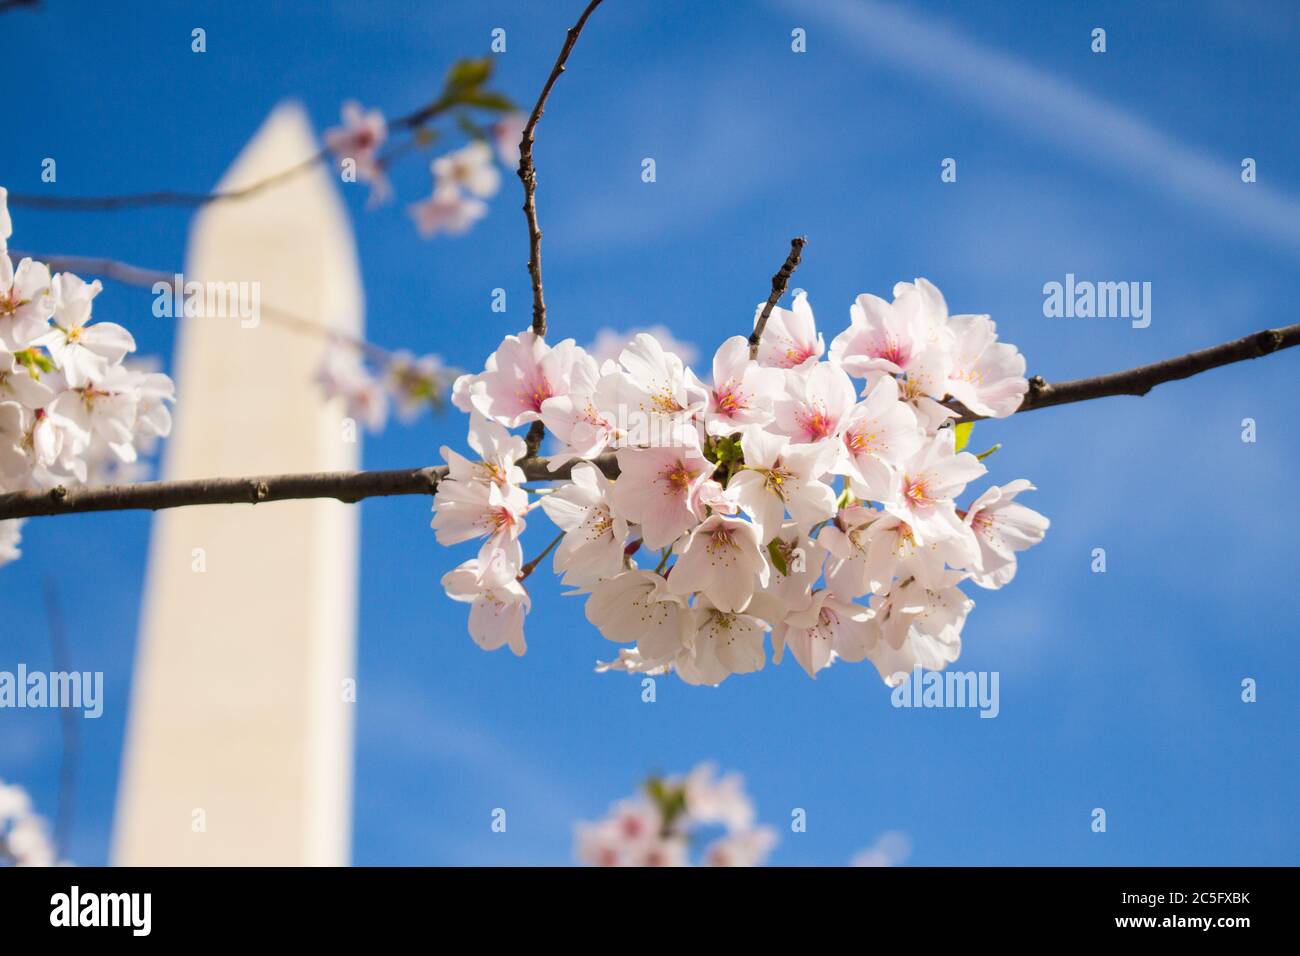 Weiße Kirschblüten / Sakura / Prunus serrulata mit dem Washington Monument im linken Hintergrund vor blauem Himmel, Washington, D.C., USA Stockfoto